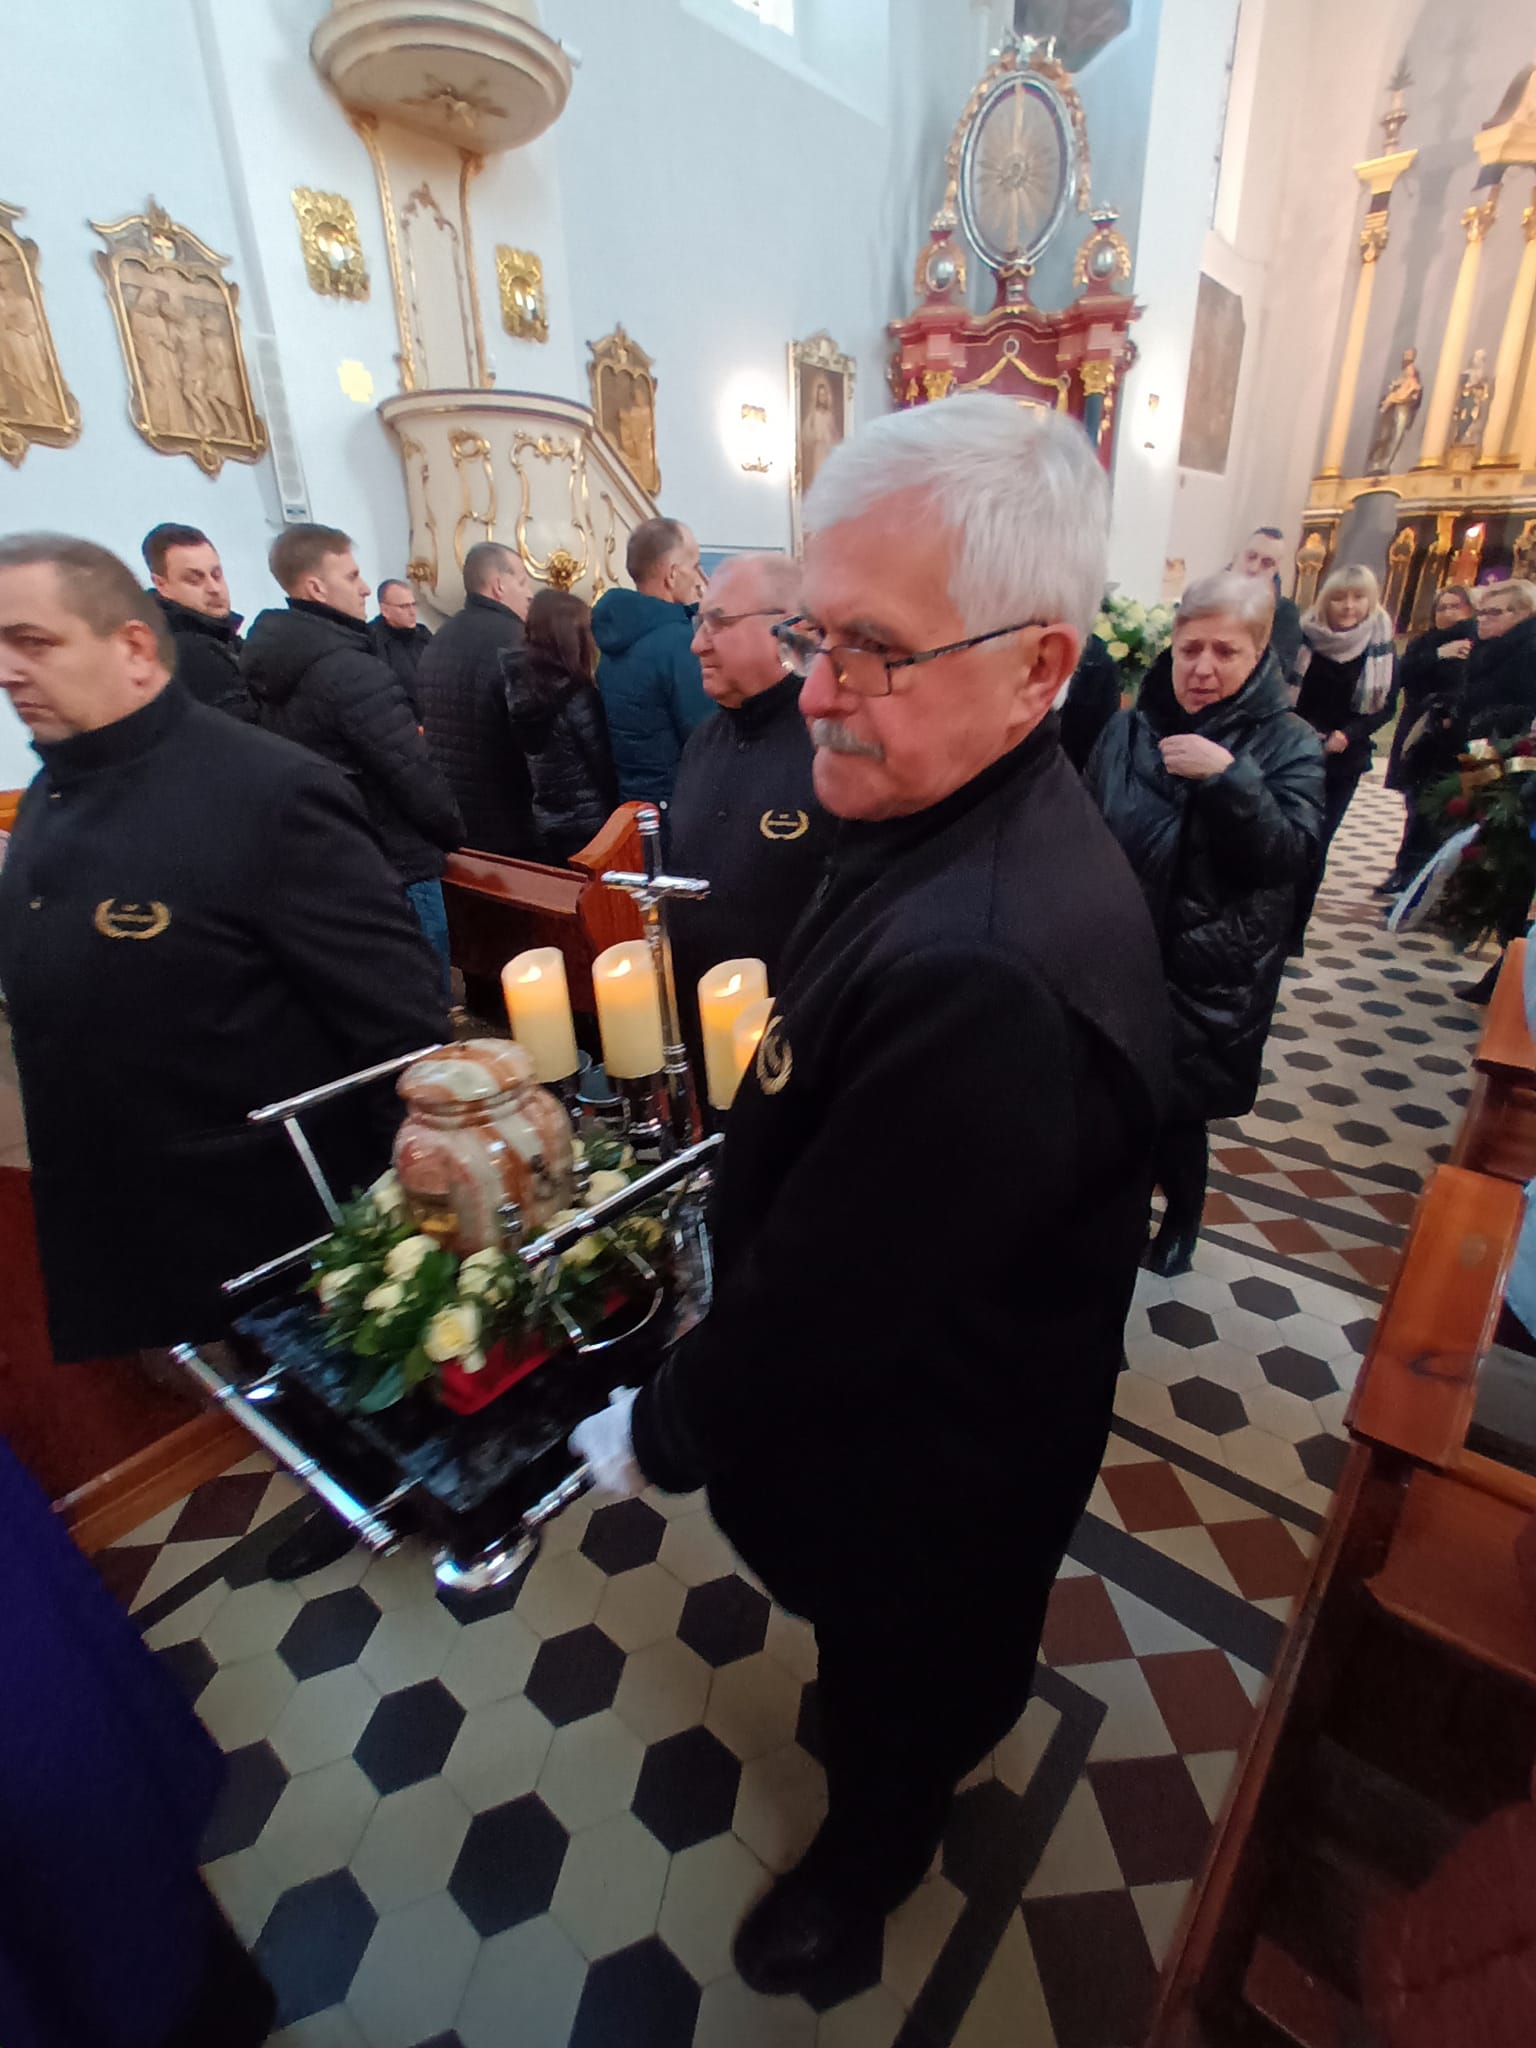 Pogrzeb ś.p. Henryka Dueskau w Kościele Katolickim w Więcborku. Photo - Tomasz Roman Bracka